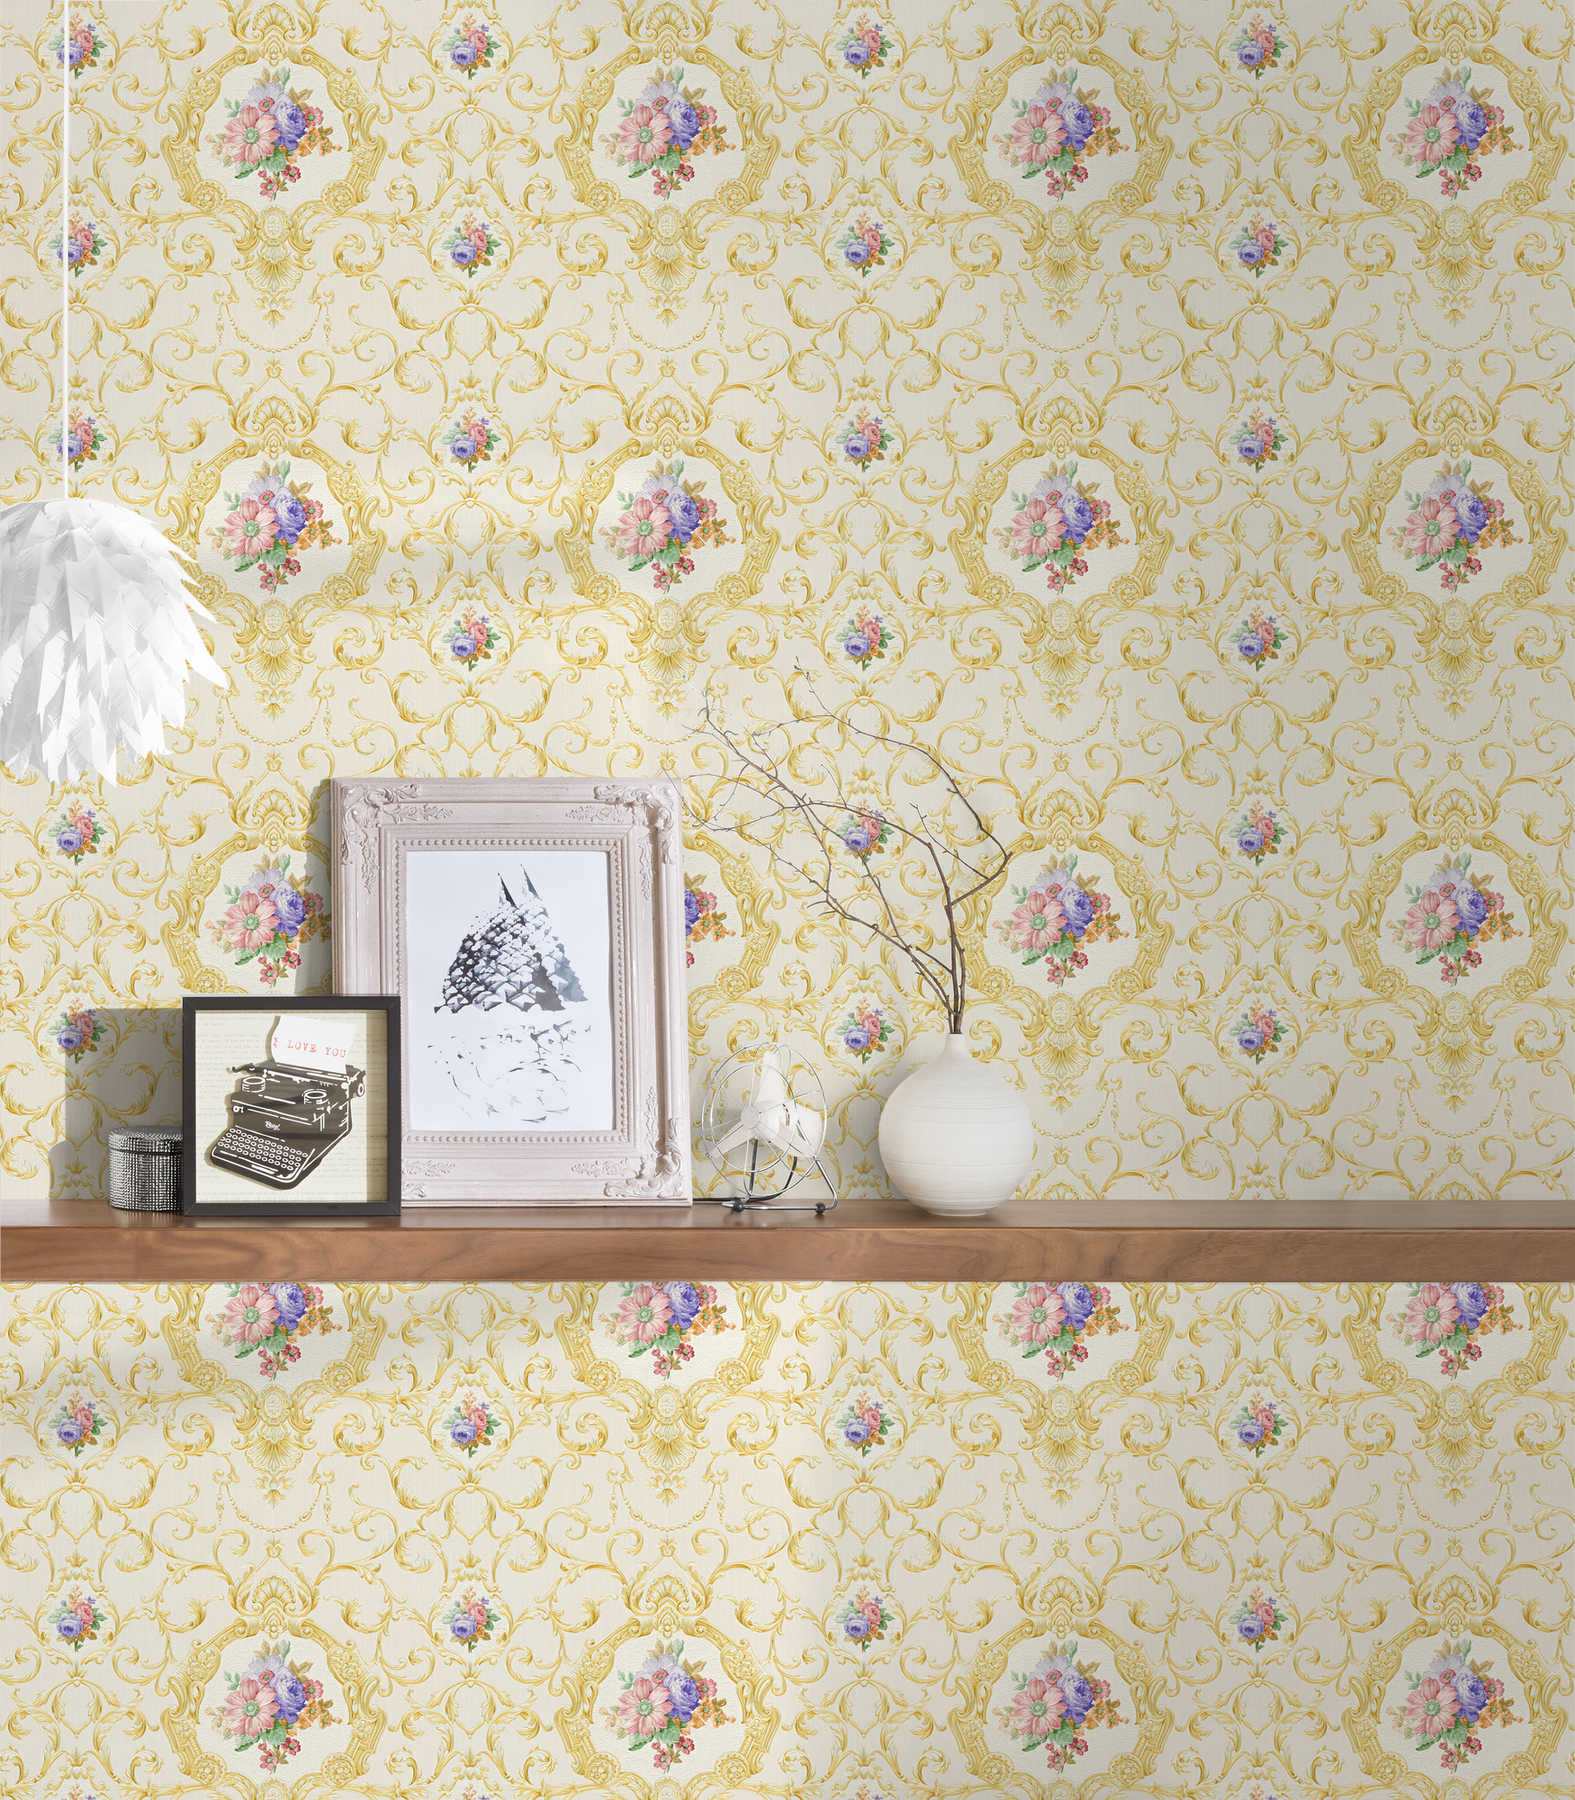             Luxus Tapete mit Ornamentmuster & Blumen-Bouquet – Creme, Metallic
        